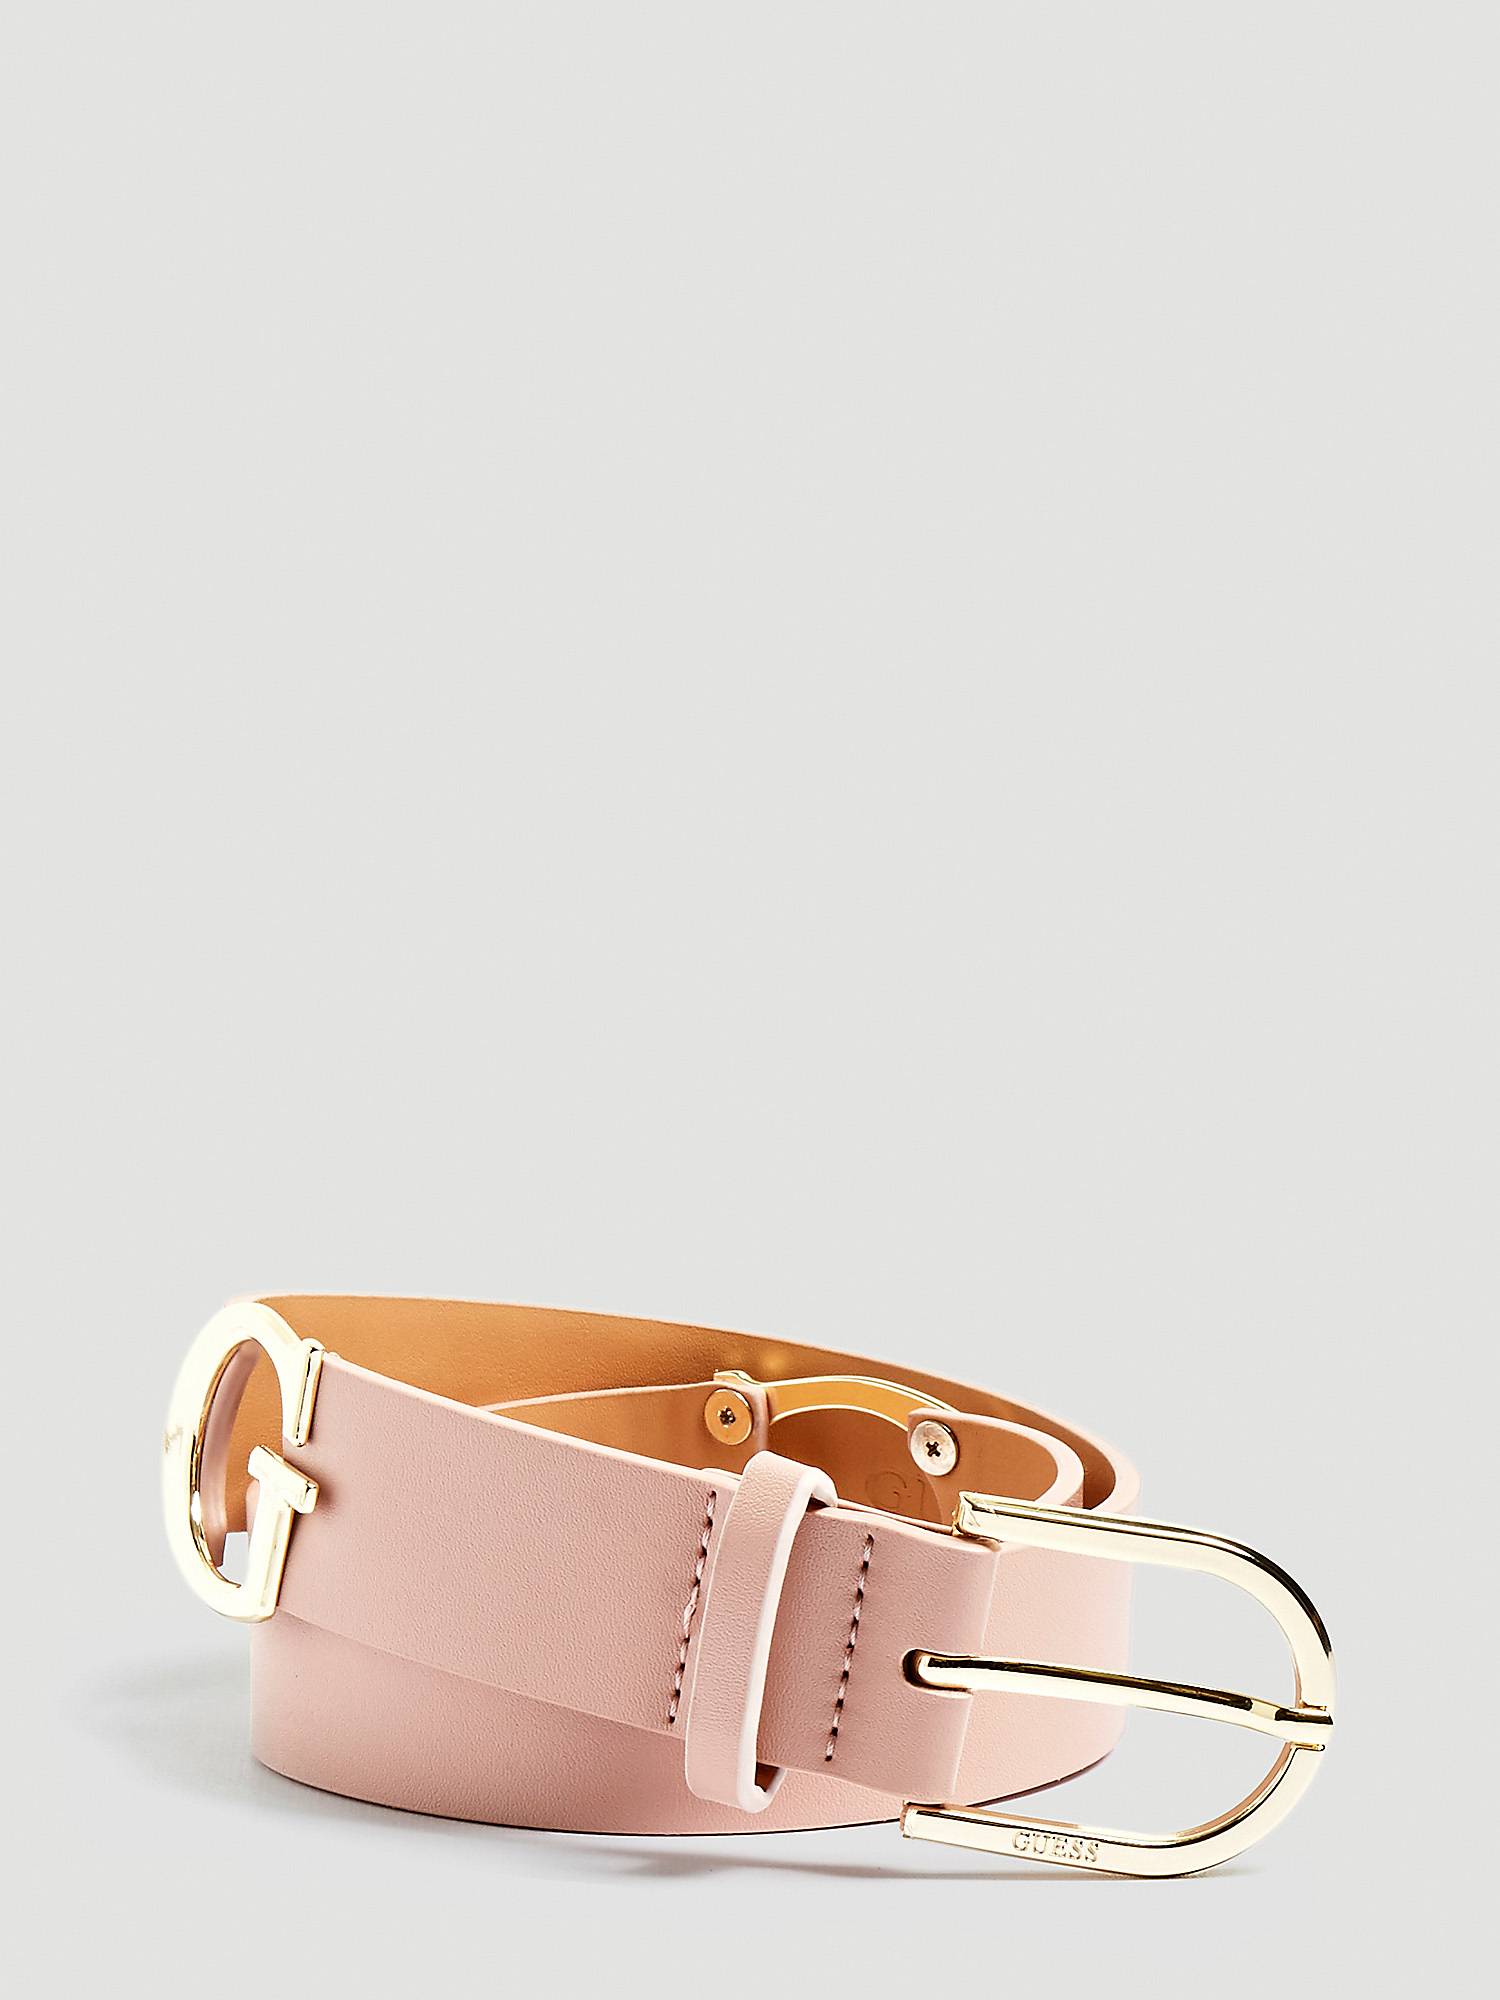 Cintura rosa pastello Guess a 55 euro